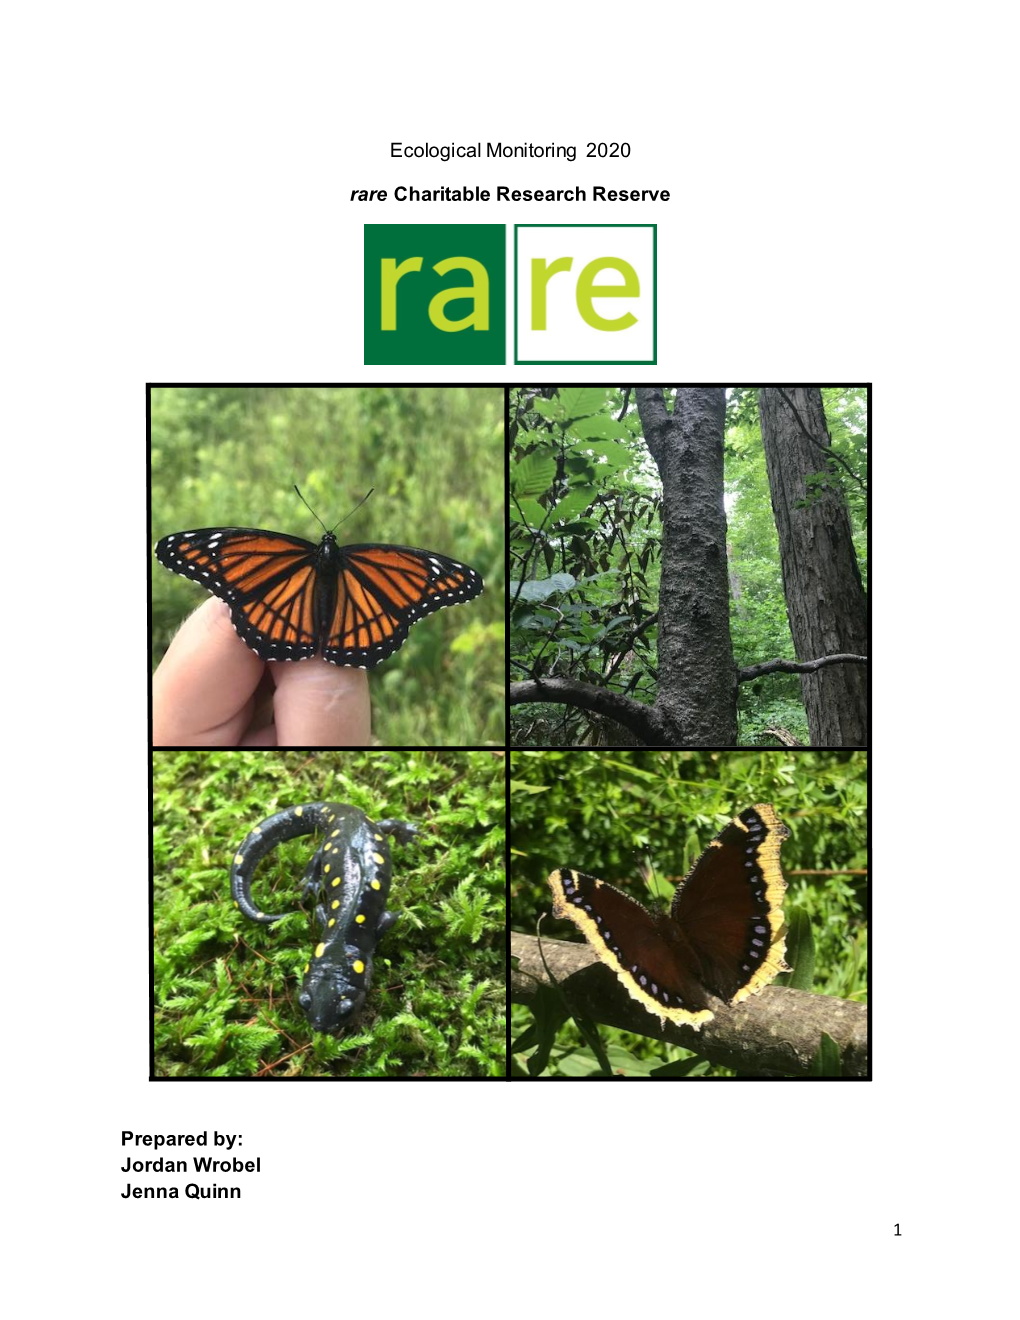 Ecological Monitoring at Rare, 2020